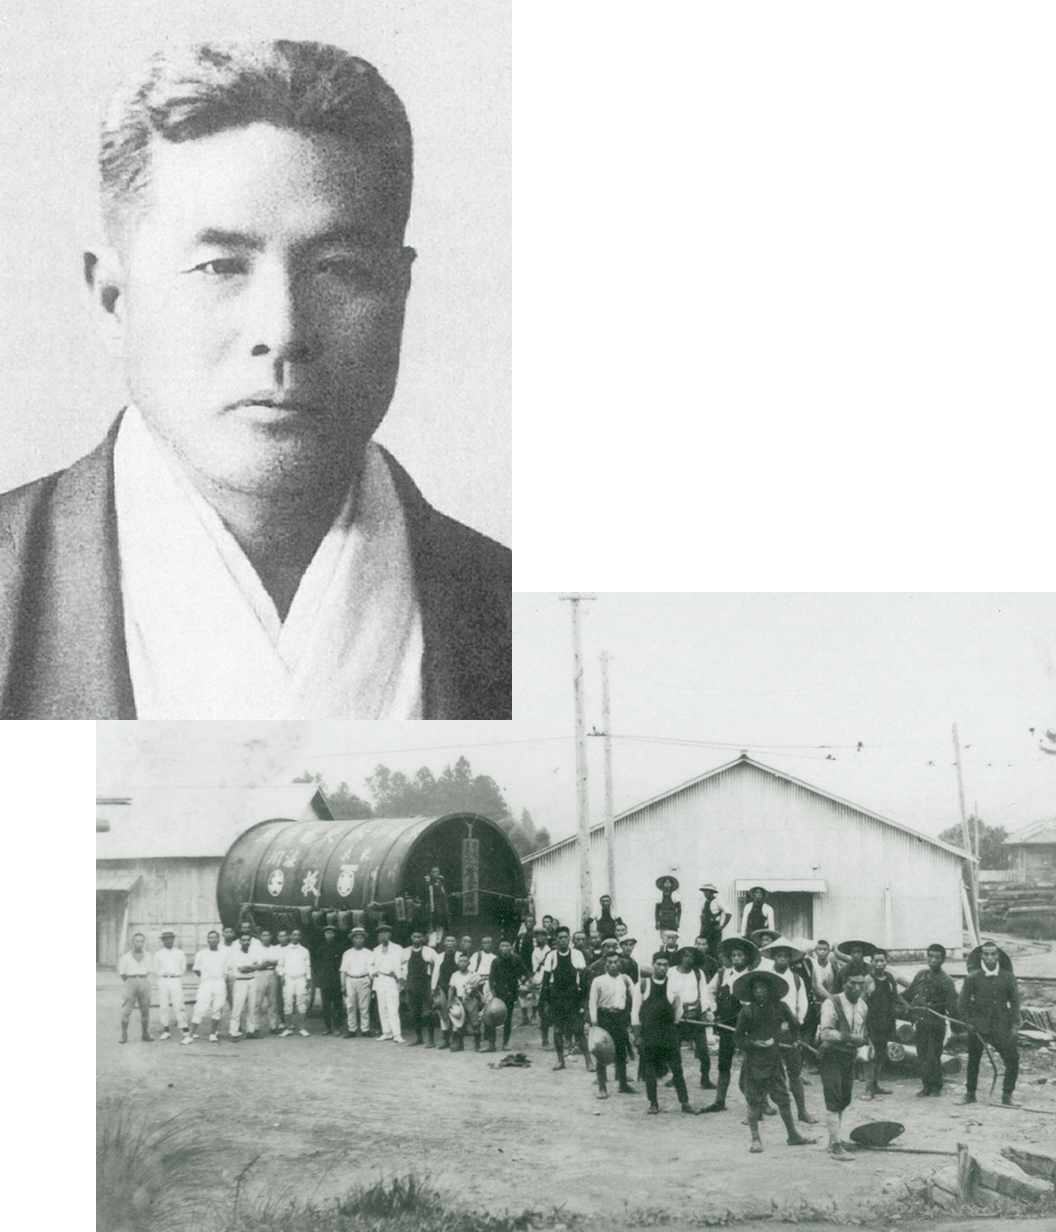 1890年、横浜の地で創業した宇都宮徳蔵回漕店。これまでの当社のあゆみを振り返ります。